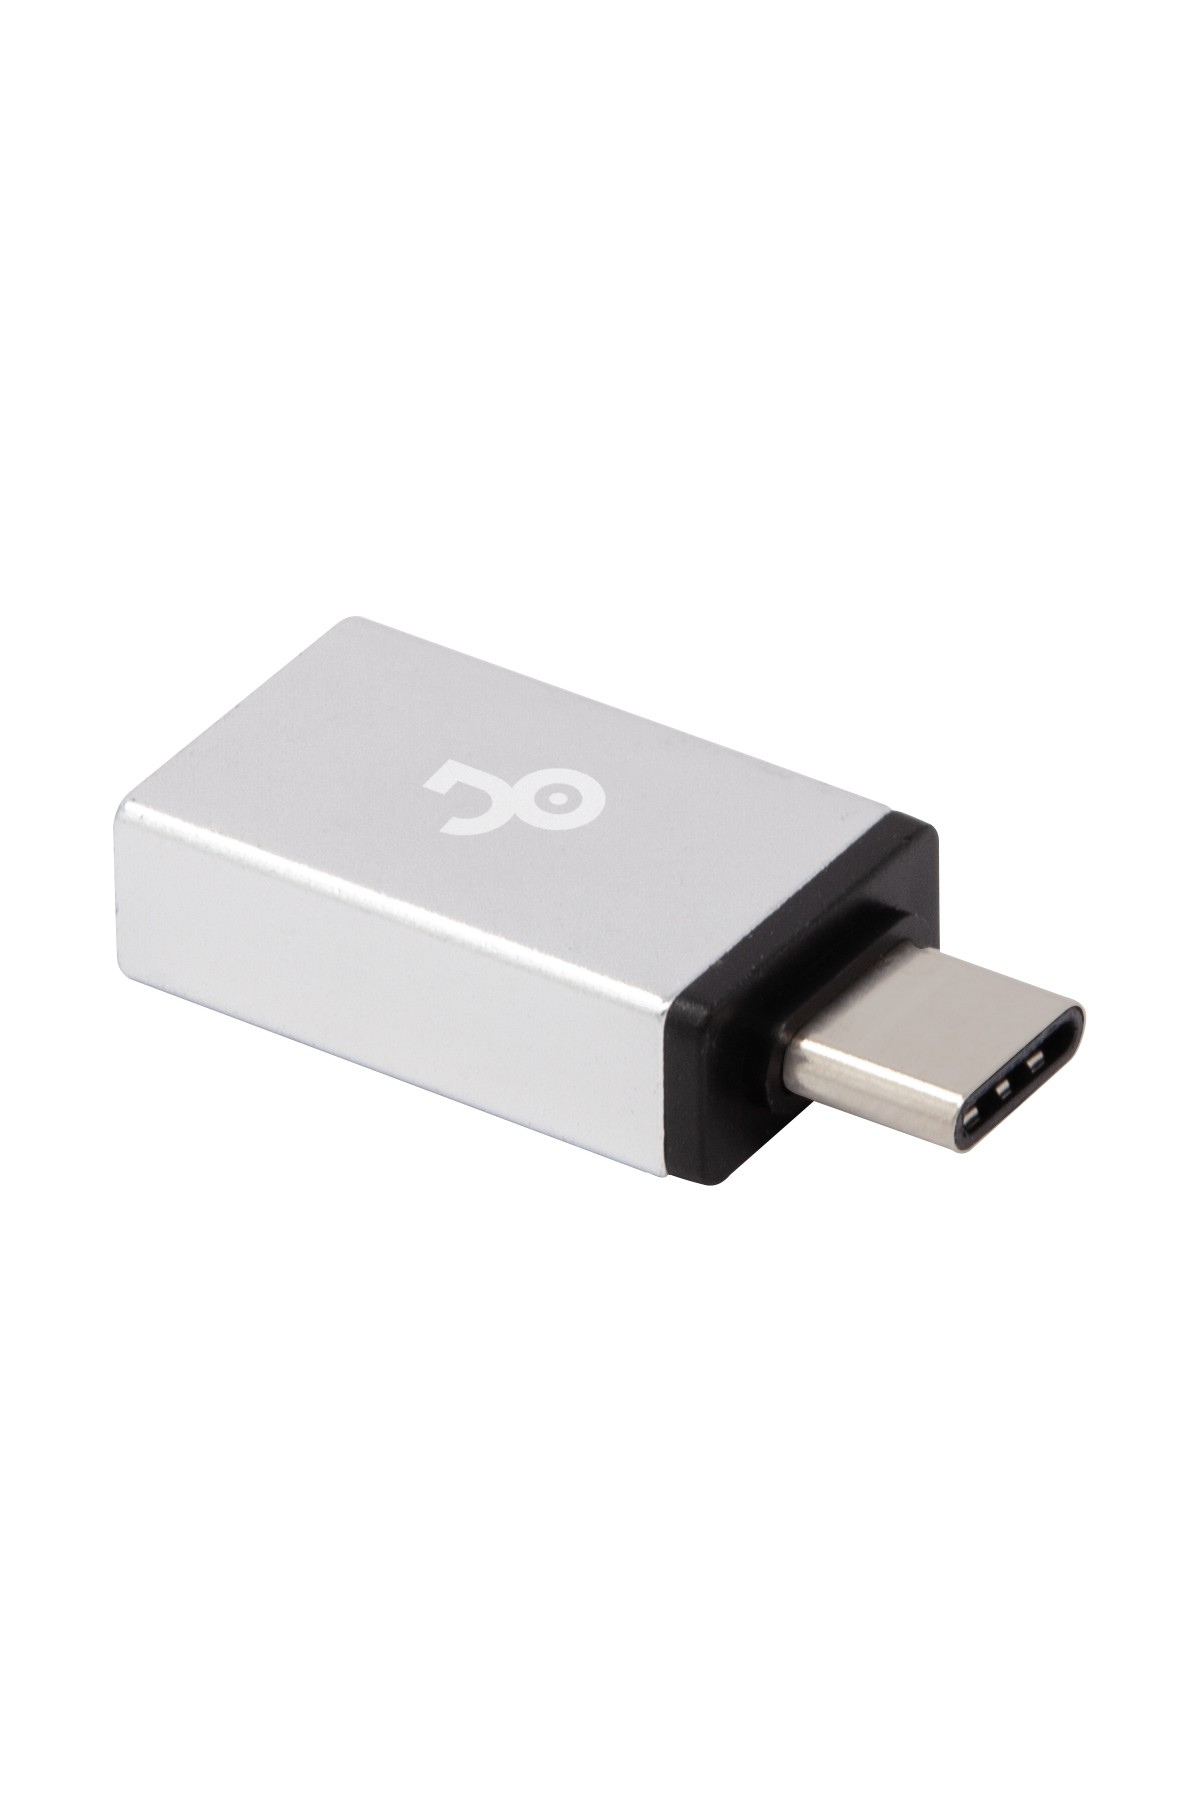 Jopus JO-IP04 Universal Type C Mini USB Otg